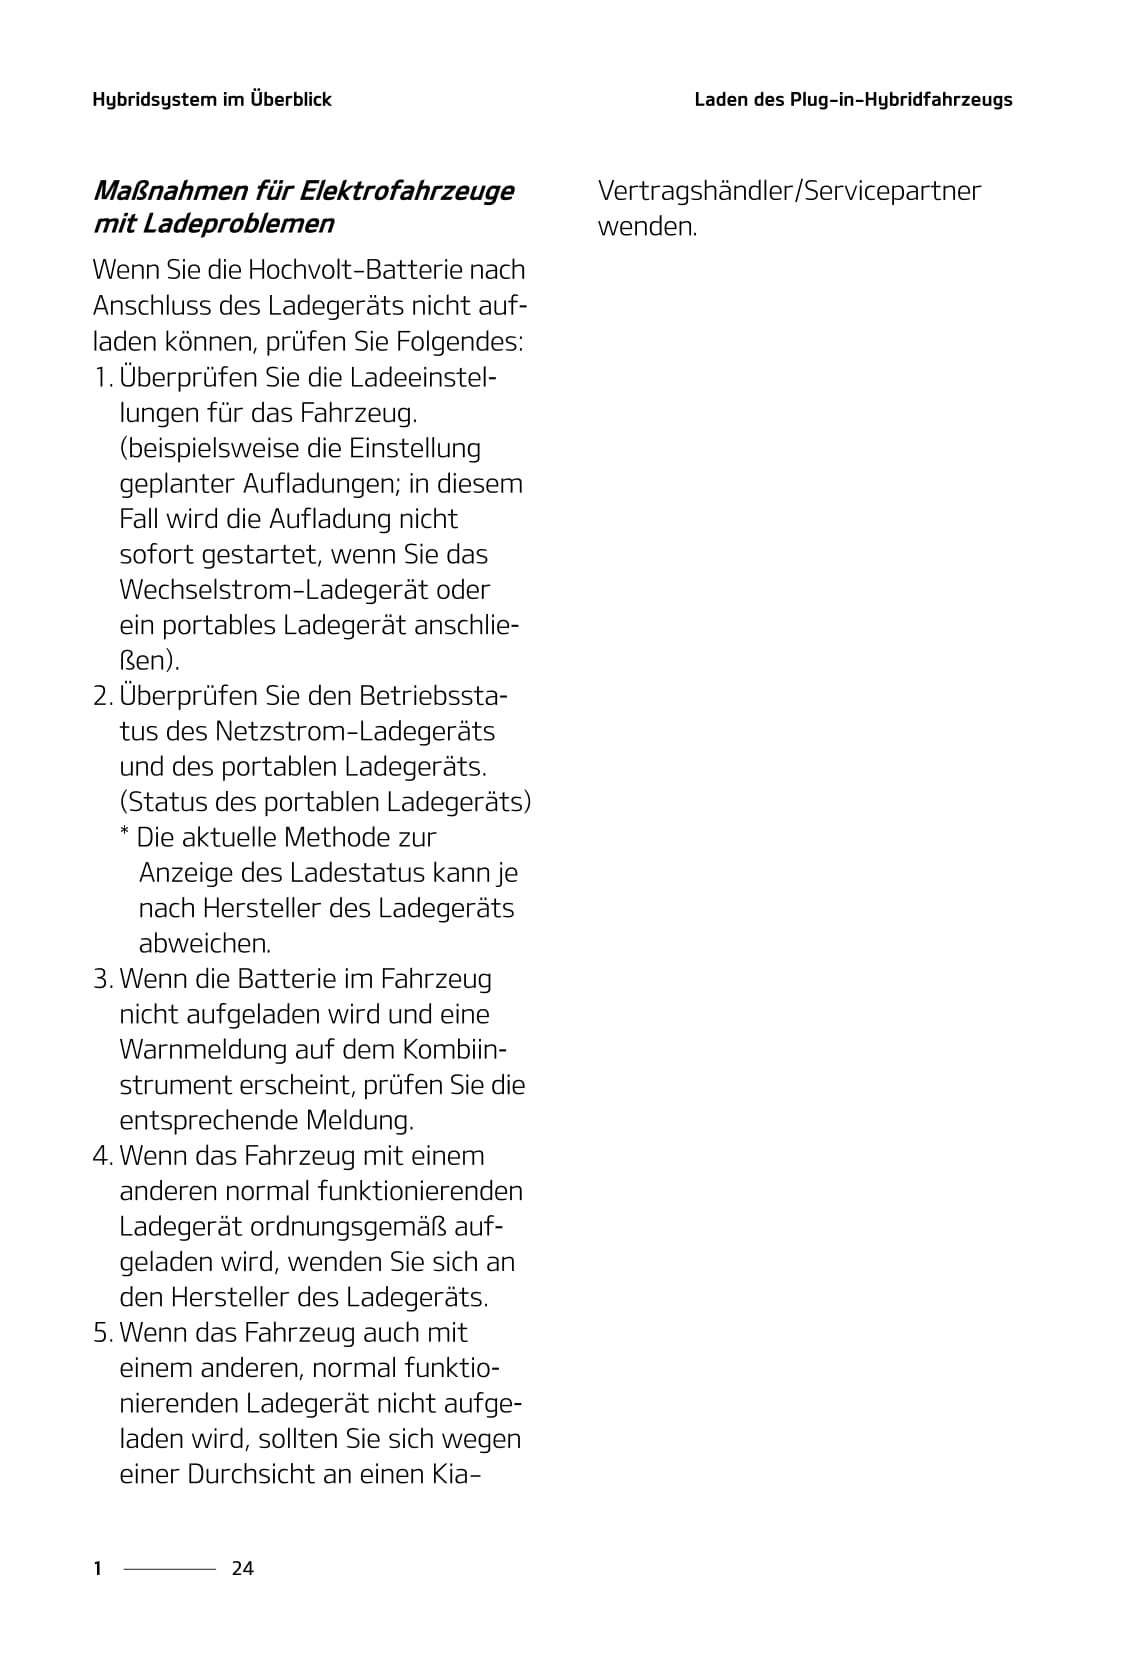 2020-2021 Kia Ceed Plug-in Hybrid Owner's Manual | German